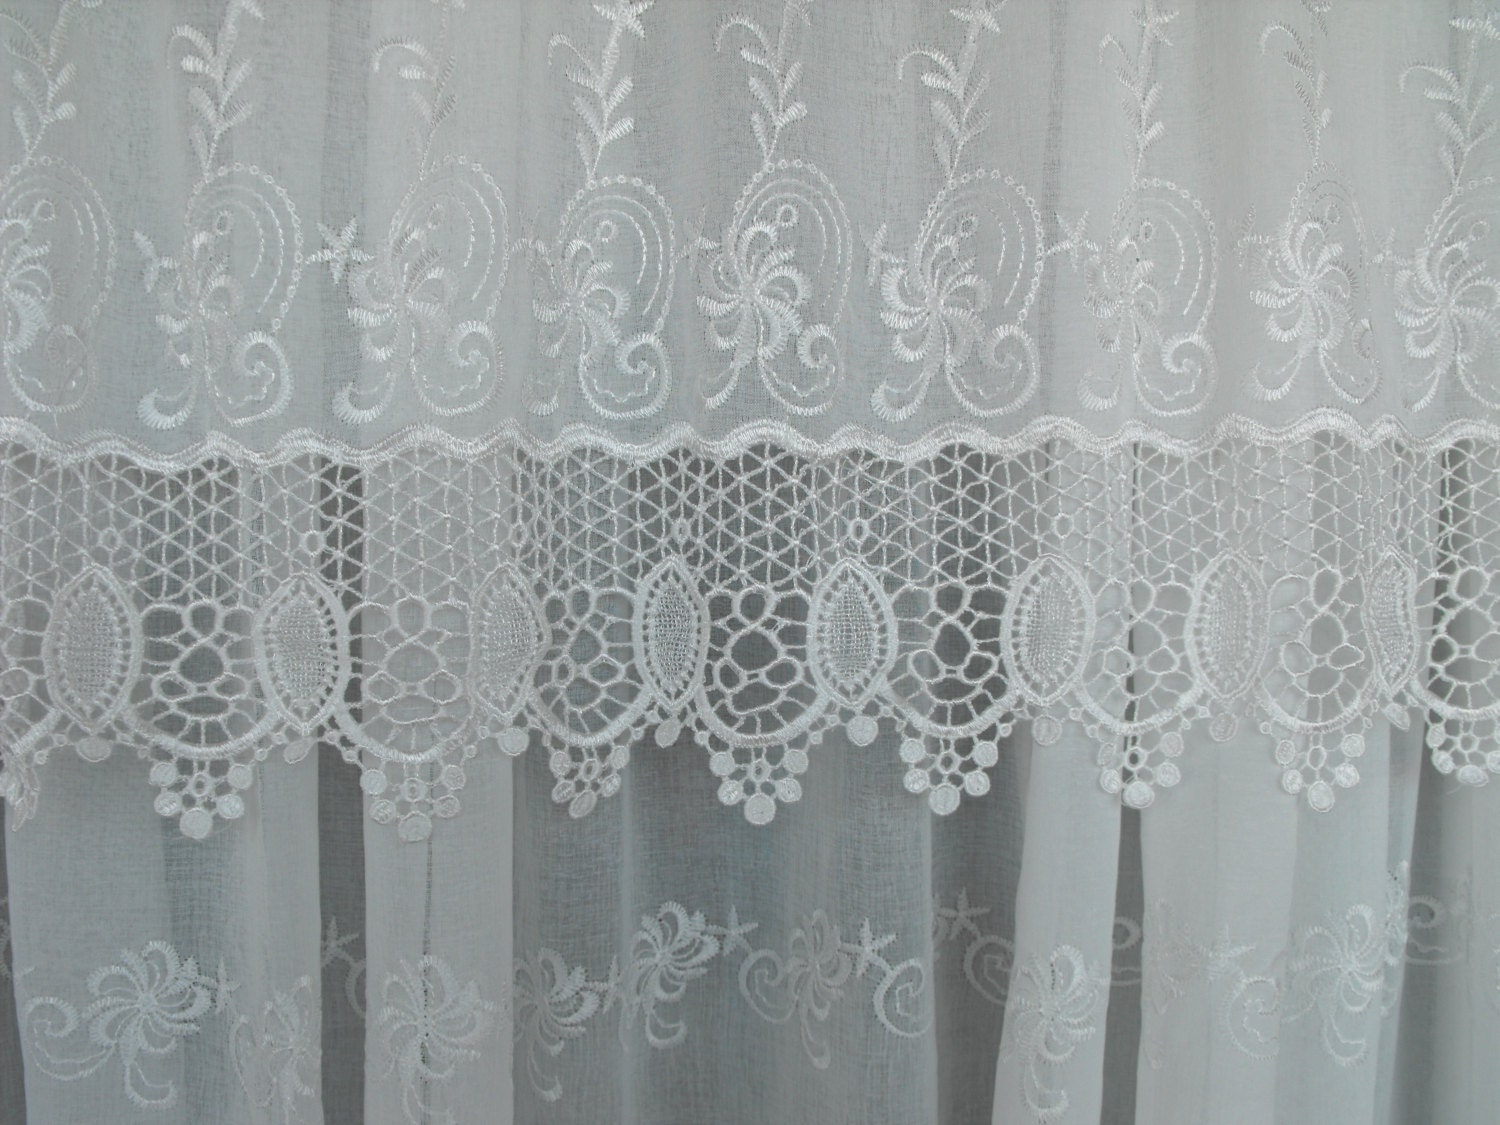 Antique Lace 3 piece sets Lace sheer curtains lace curtains